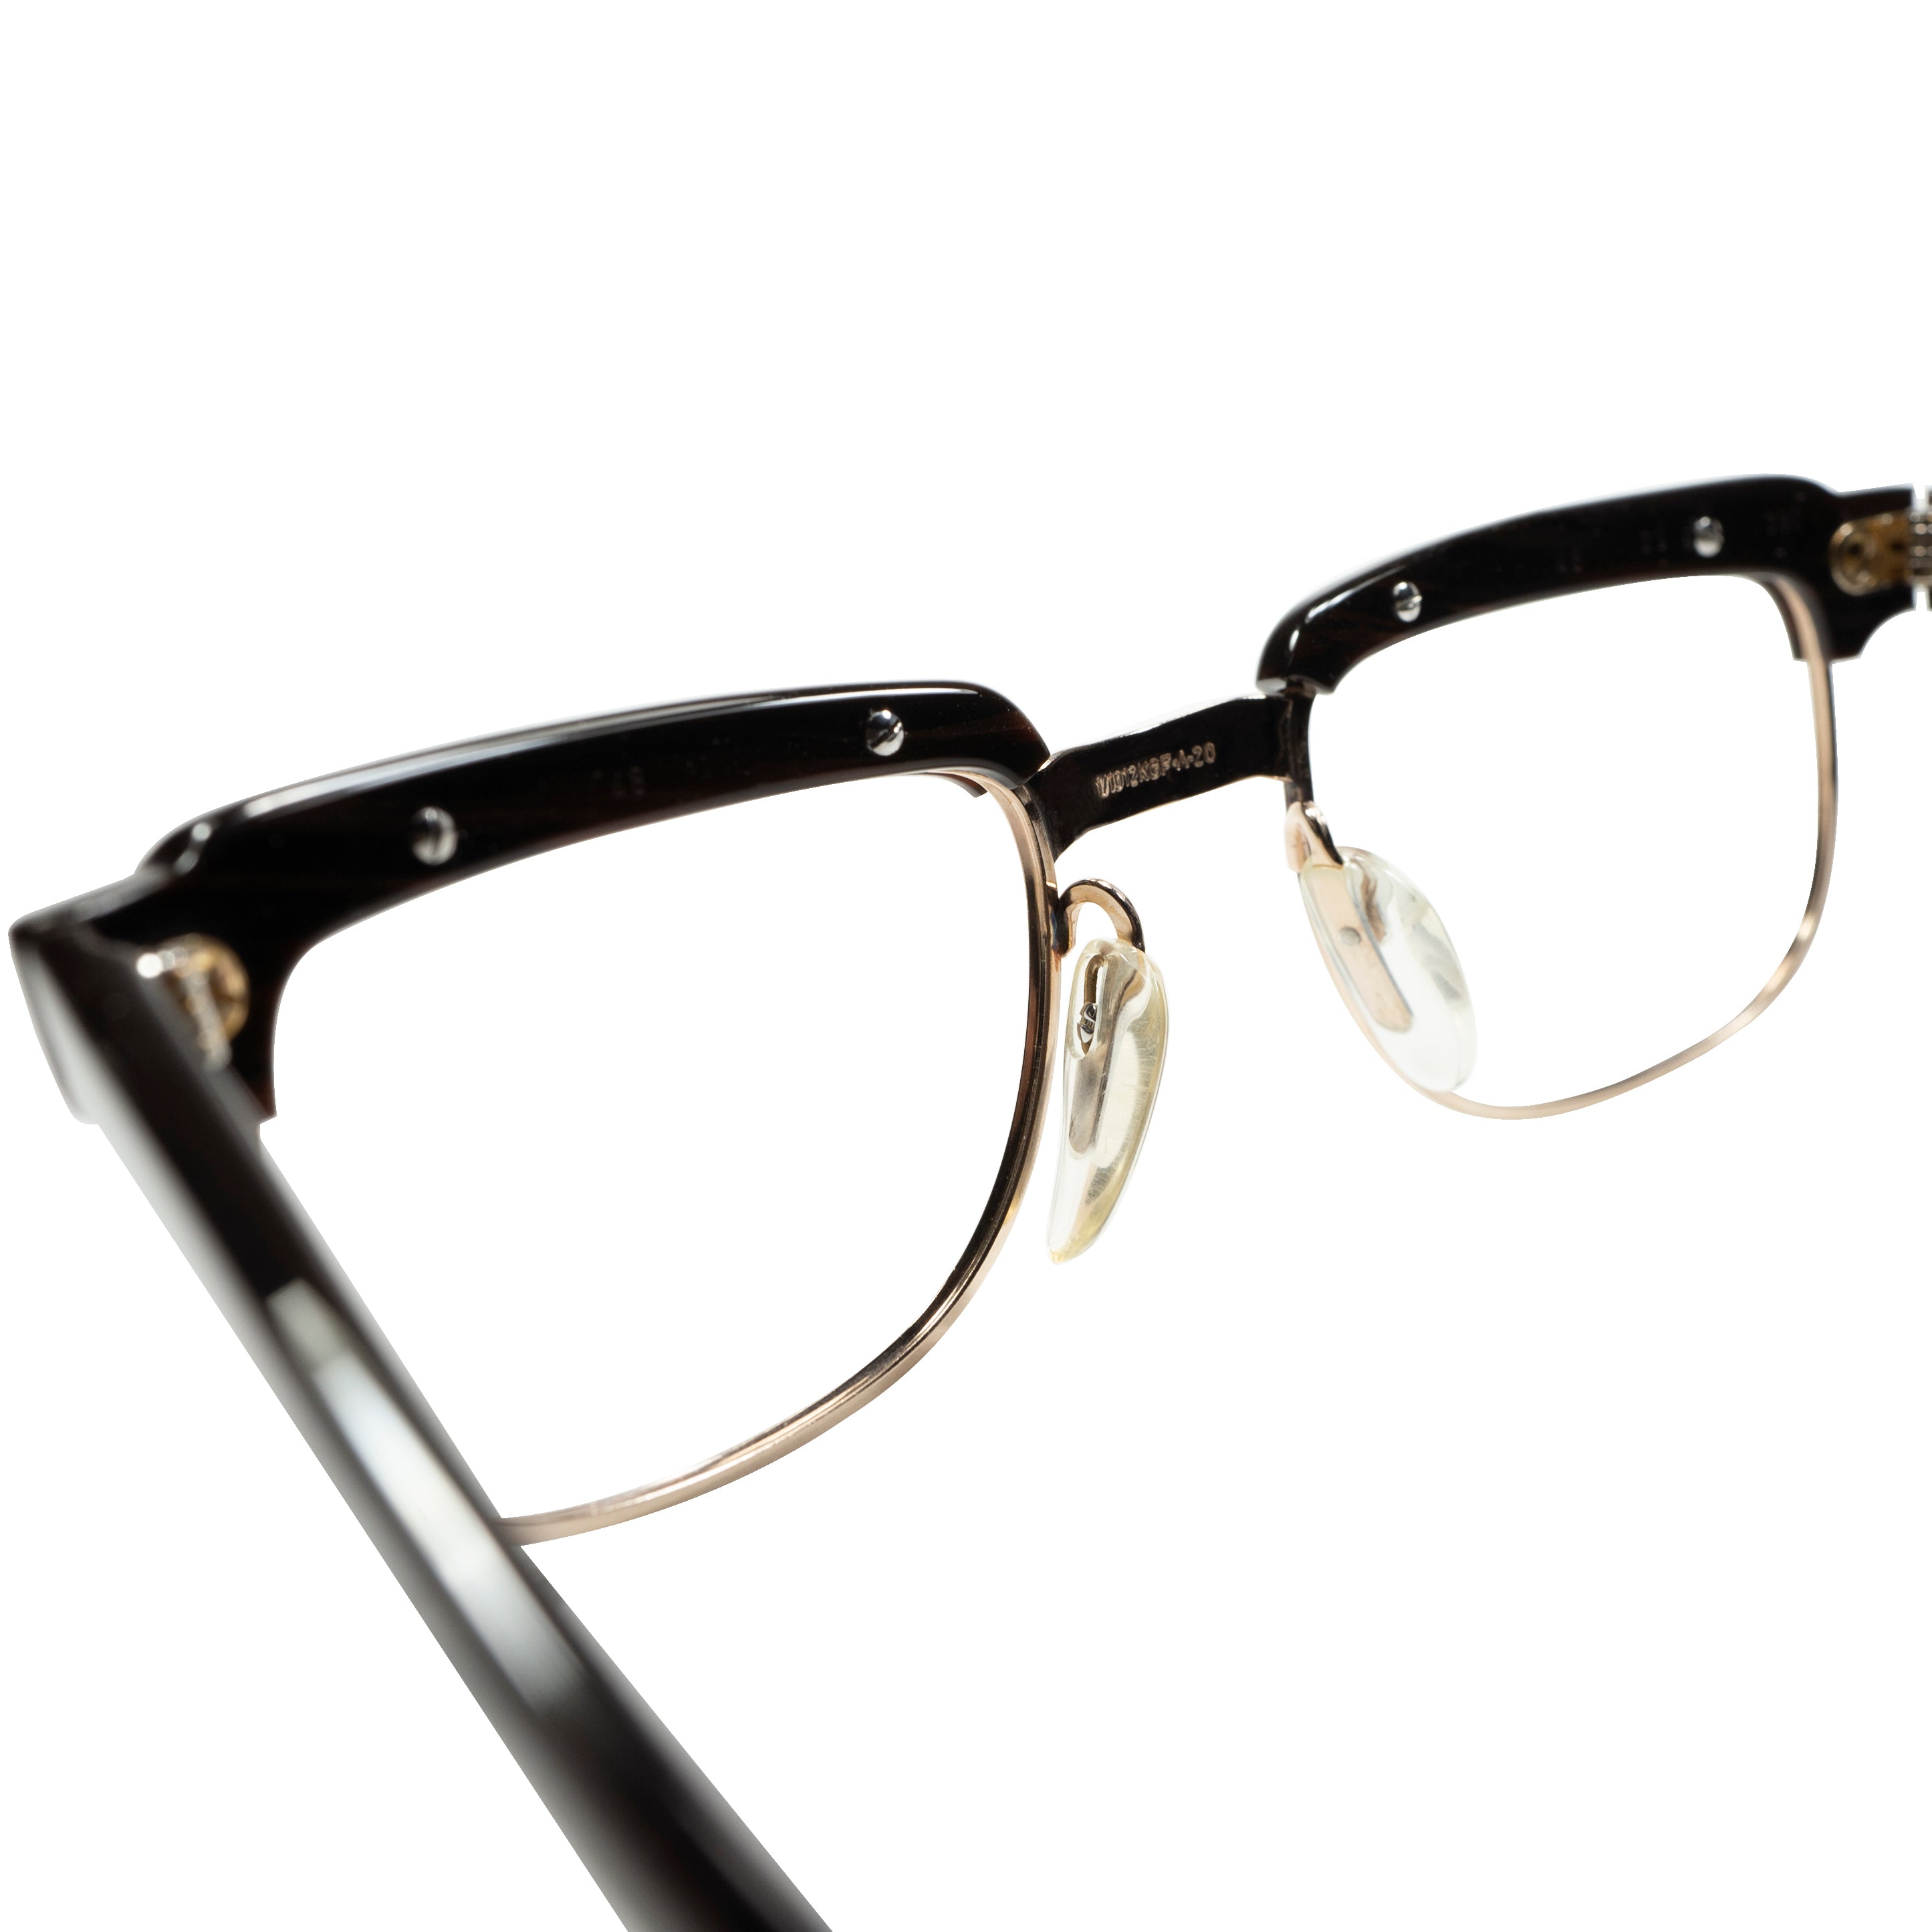 伝説的コンビらしいポテンシャルMAXの初期作品 1960s AUSTRIA製 デッドストック VIENNALINE 1/10 12KGF金張  クラウンパント派生型 ブロー size48/20 ビンテージ ヴィンテージ 眼鏡 メガネ 【a8585】